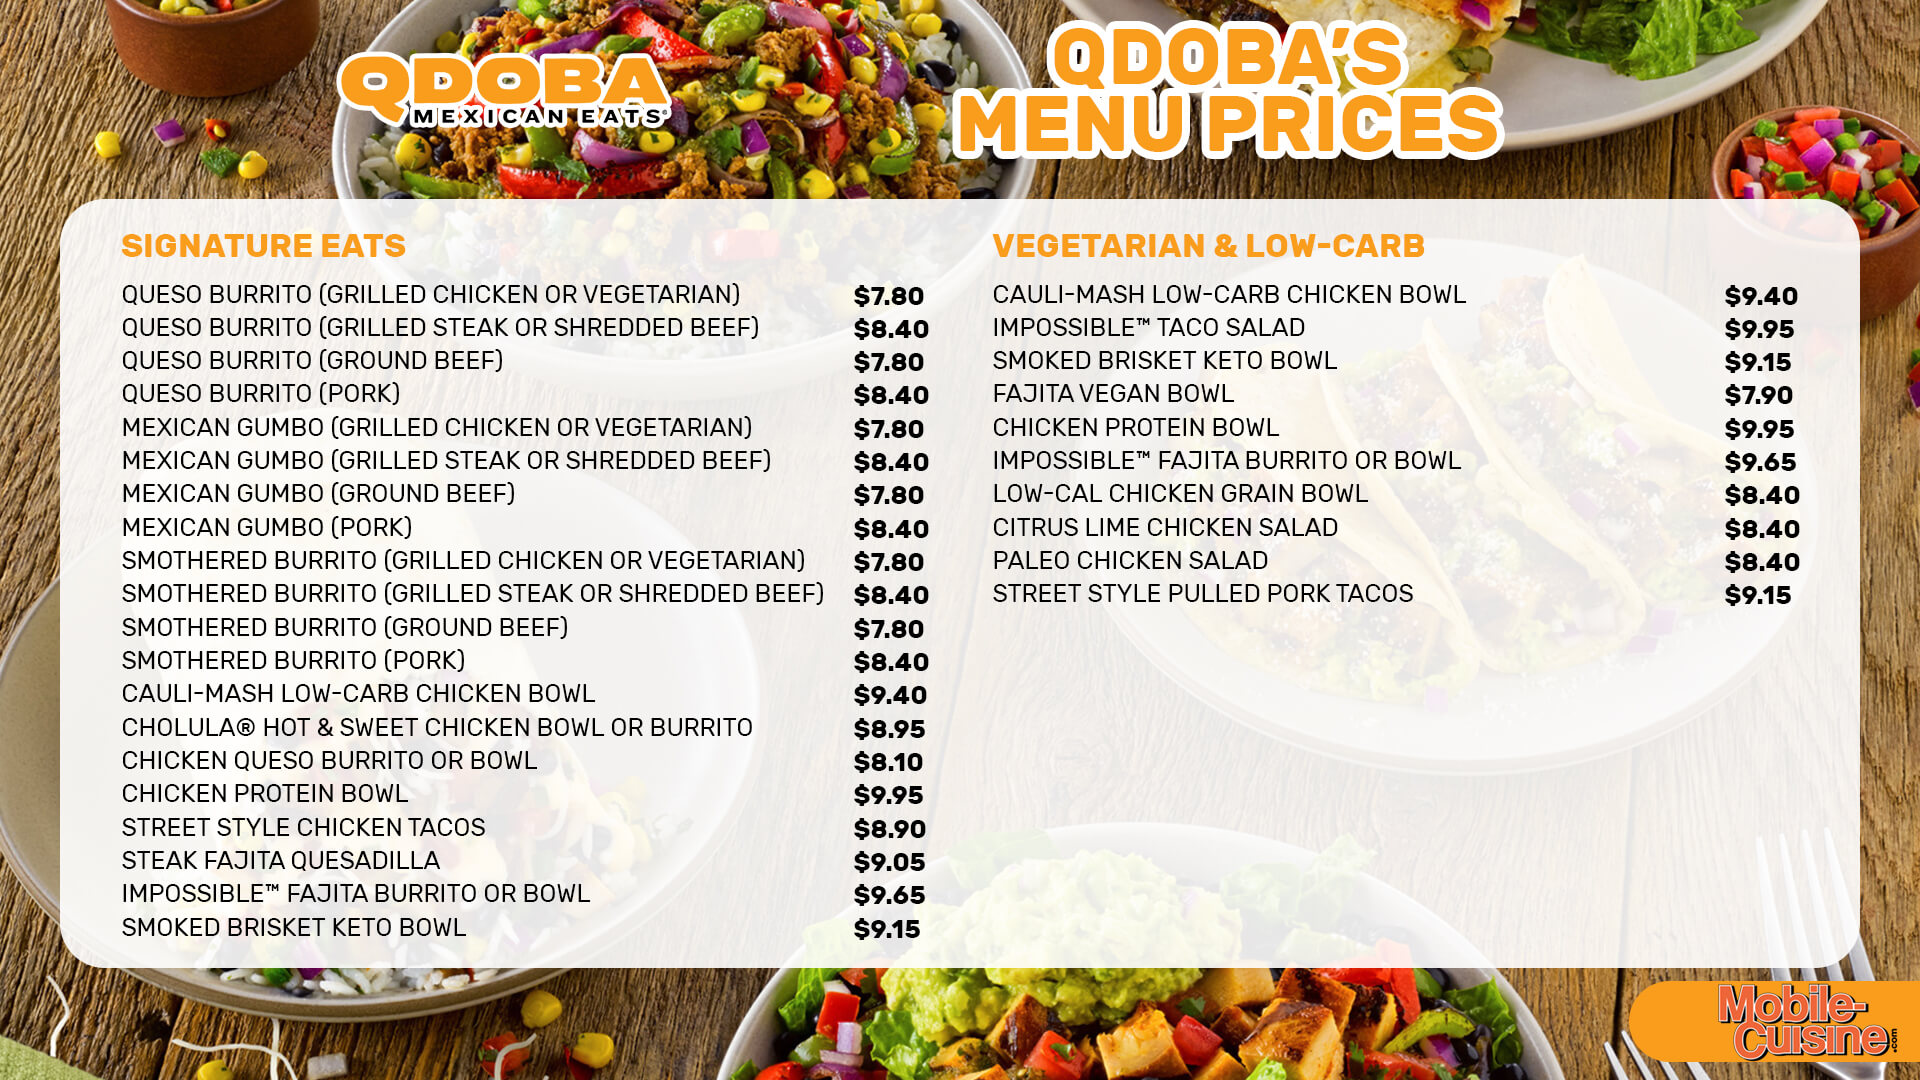 QDOBA-menu-prices